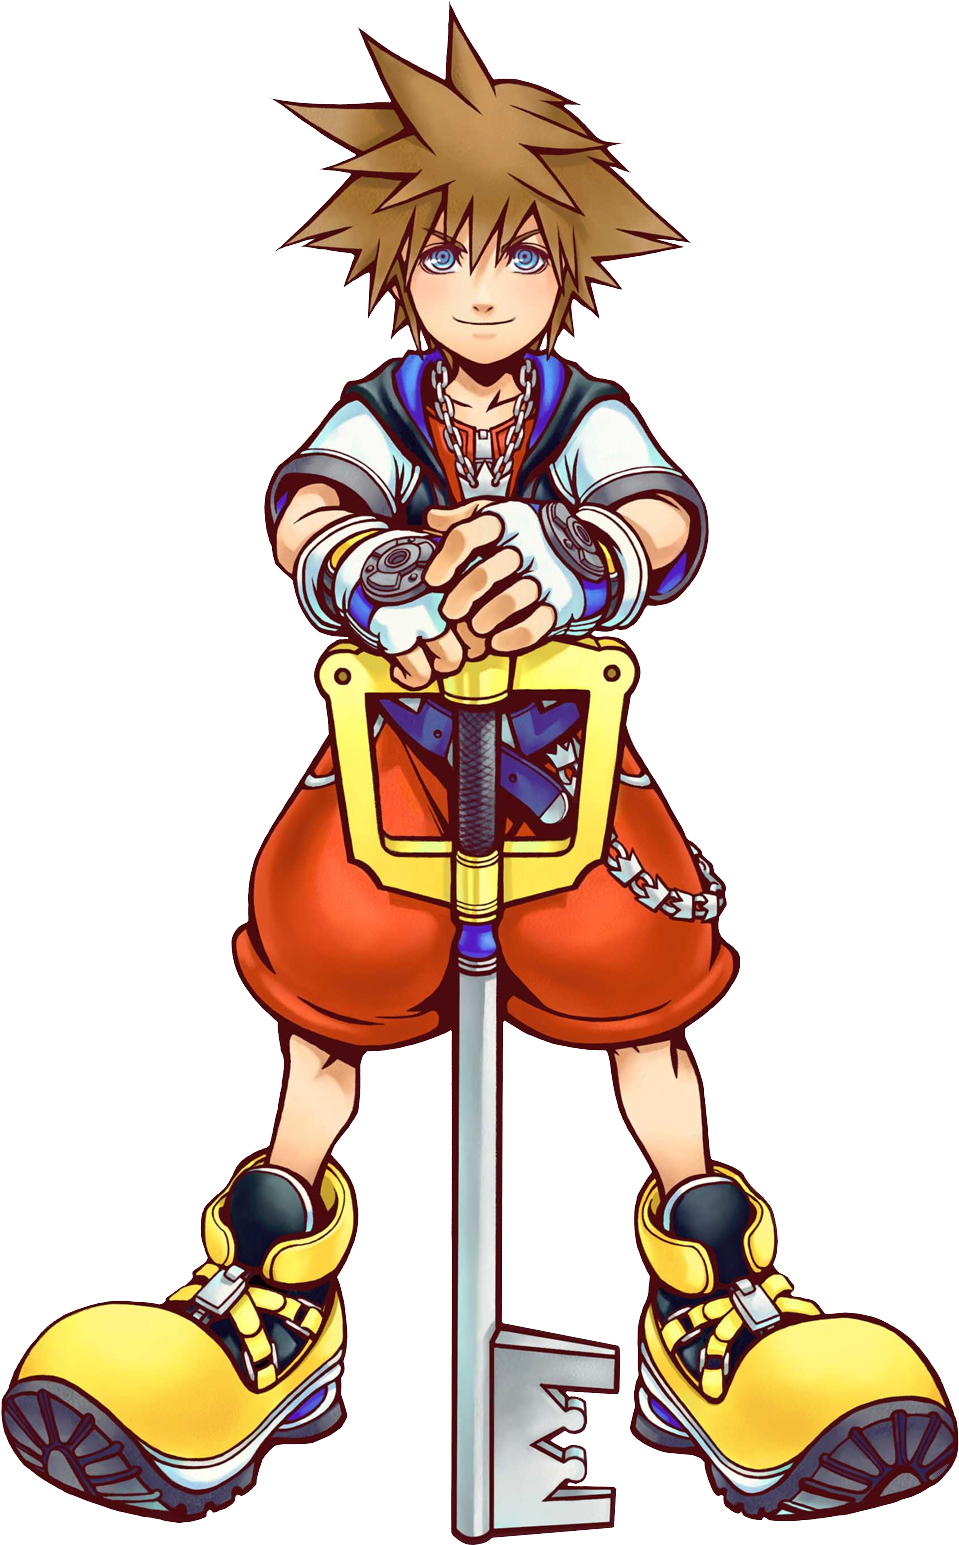 Sora 2 Kh - Kingdom Hearts Sora Artwork (974x1552)